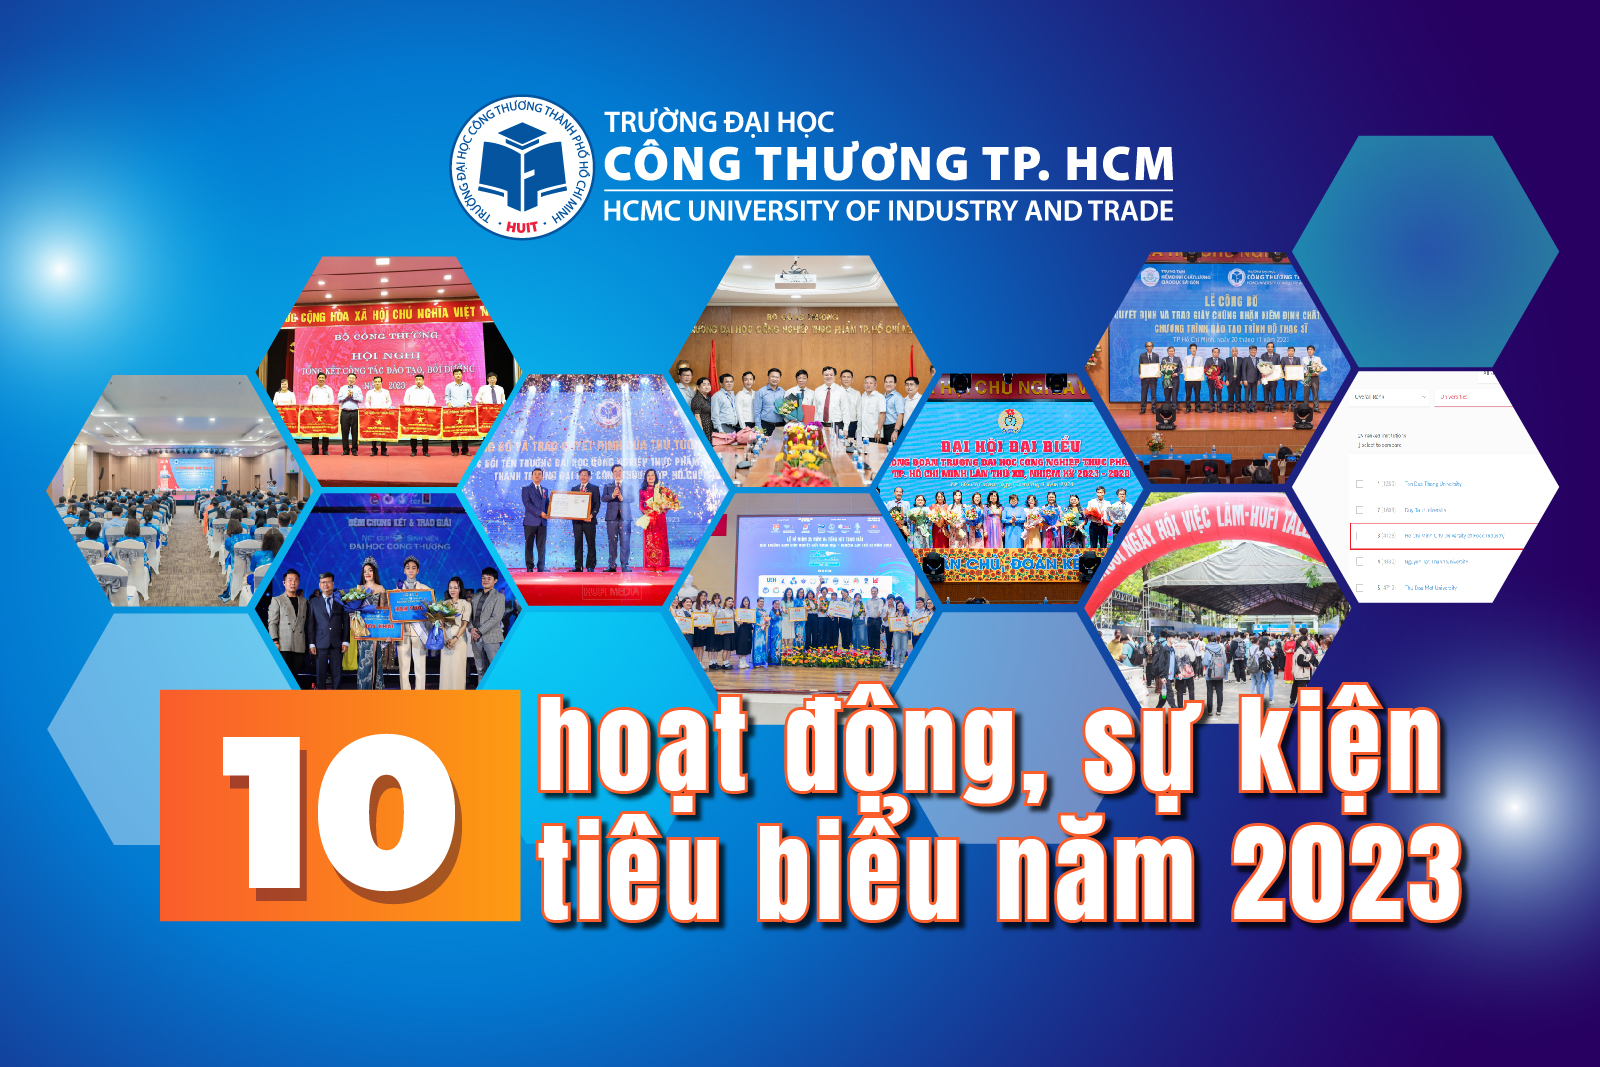 10 hoạt động, sự kiện tiêu biểu trong năm 2023 của Trường Đại học Công Thương TP. Hồ Chí Minh